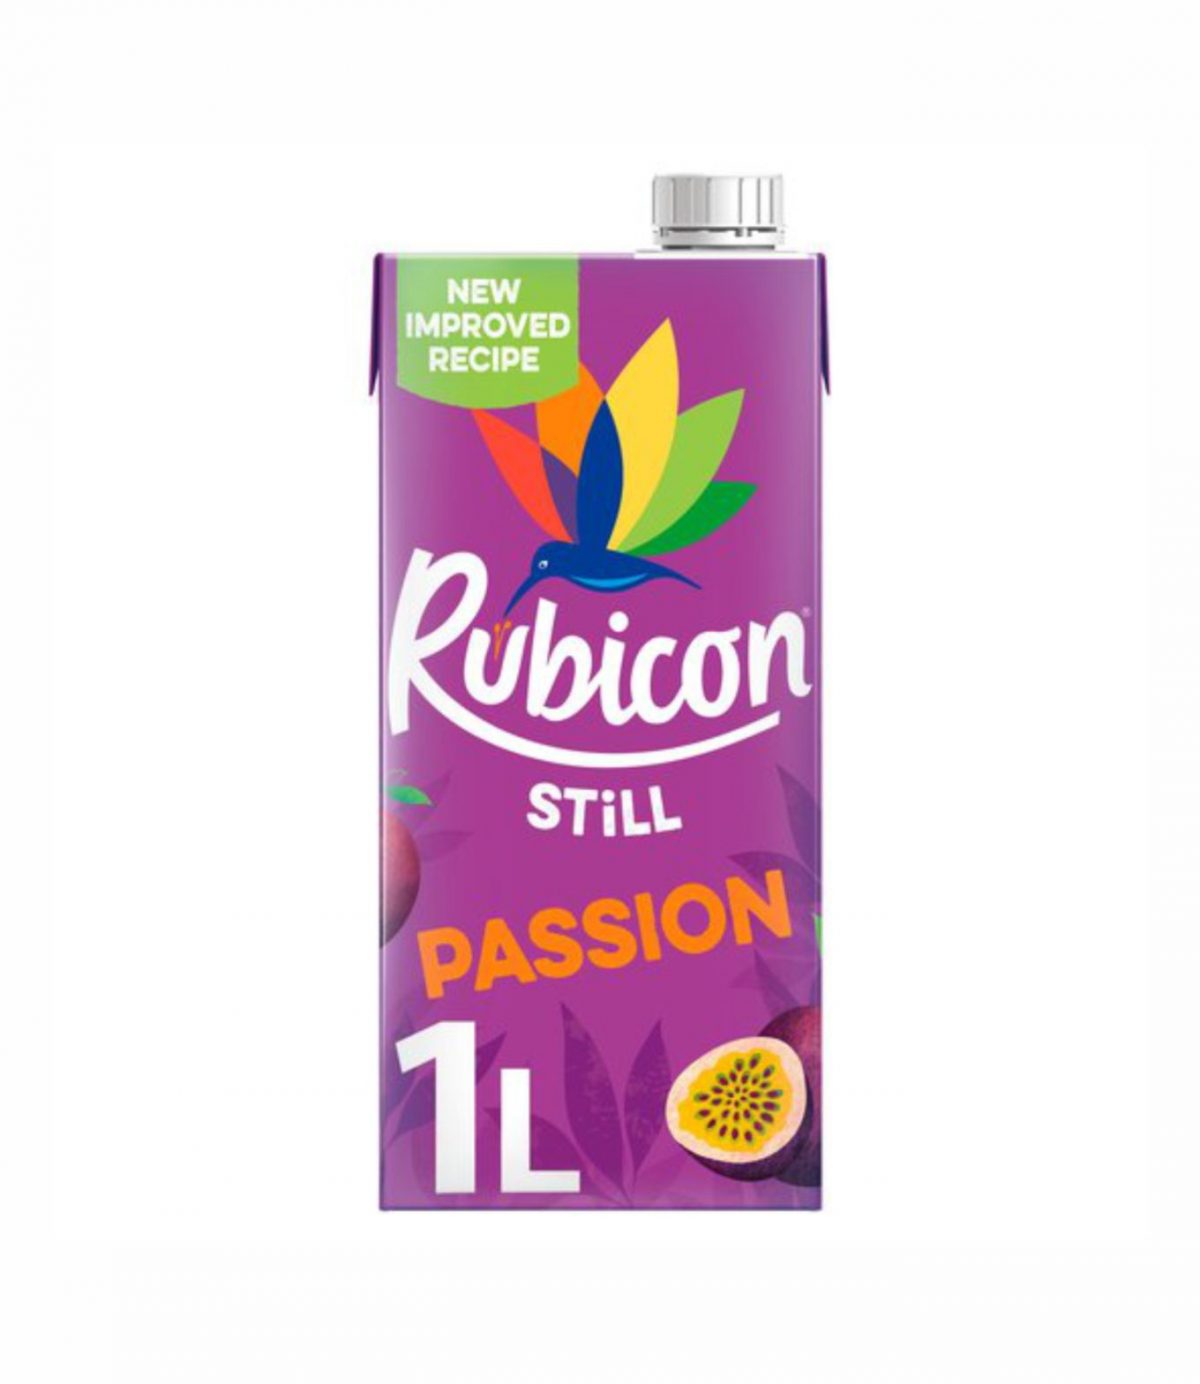 Rubicon PASSION